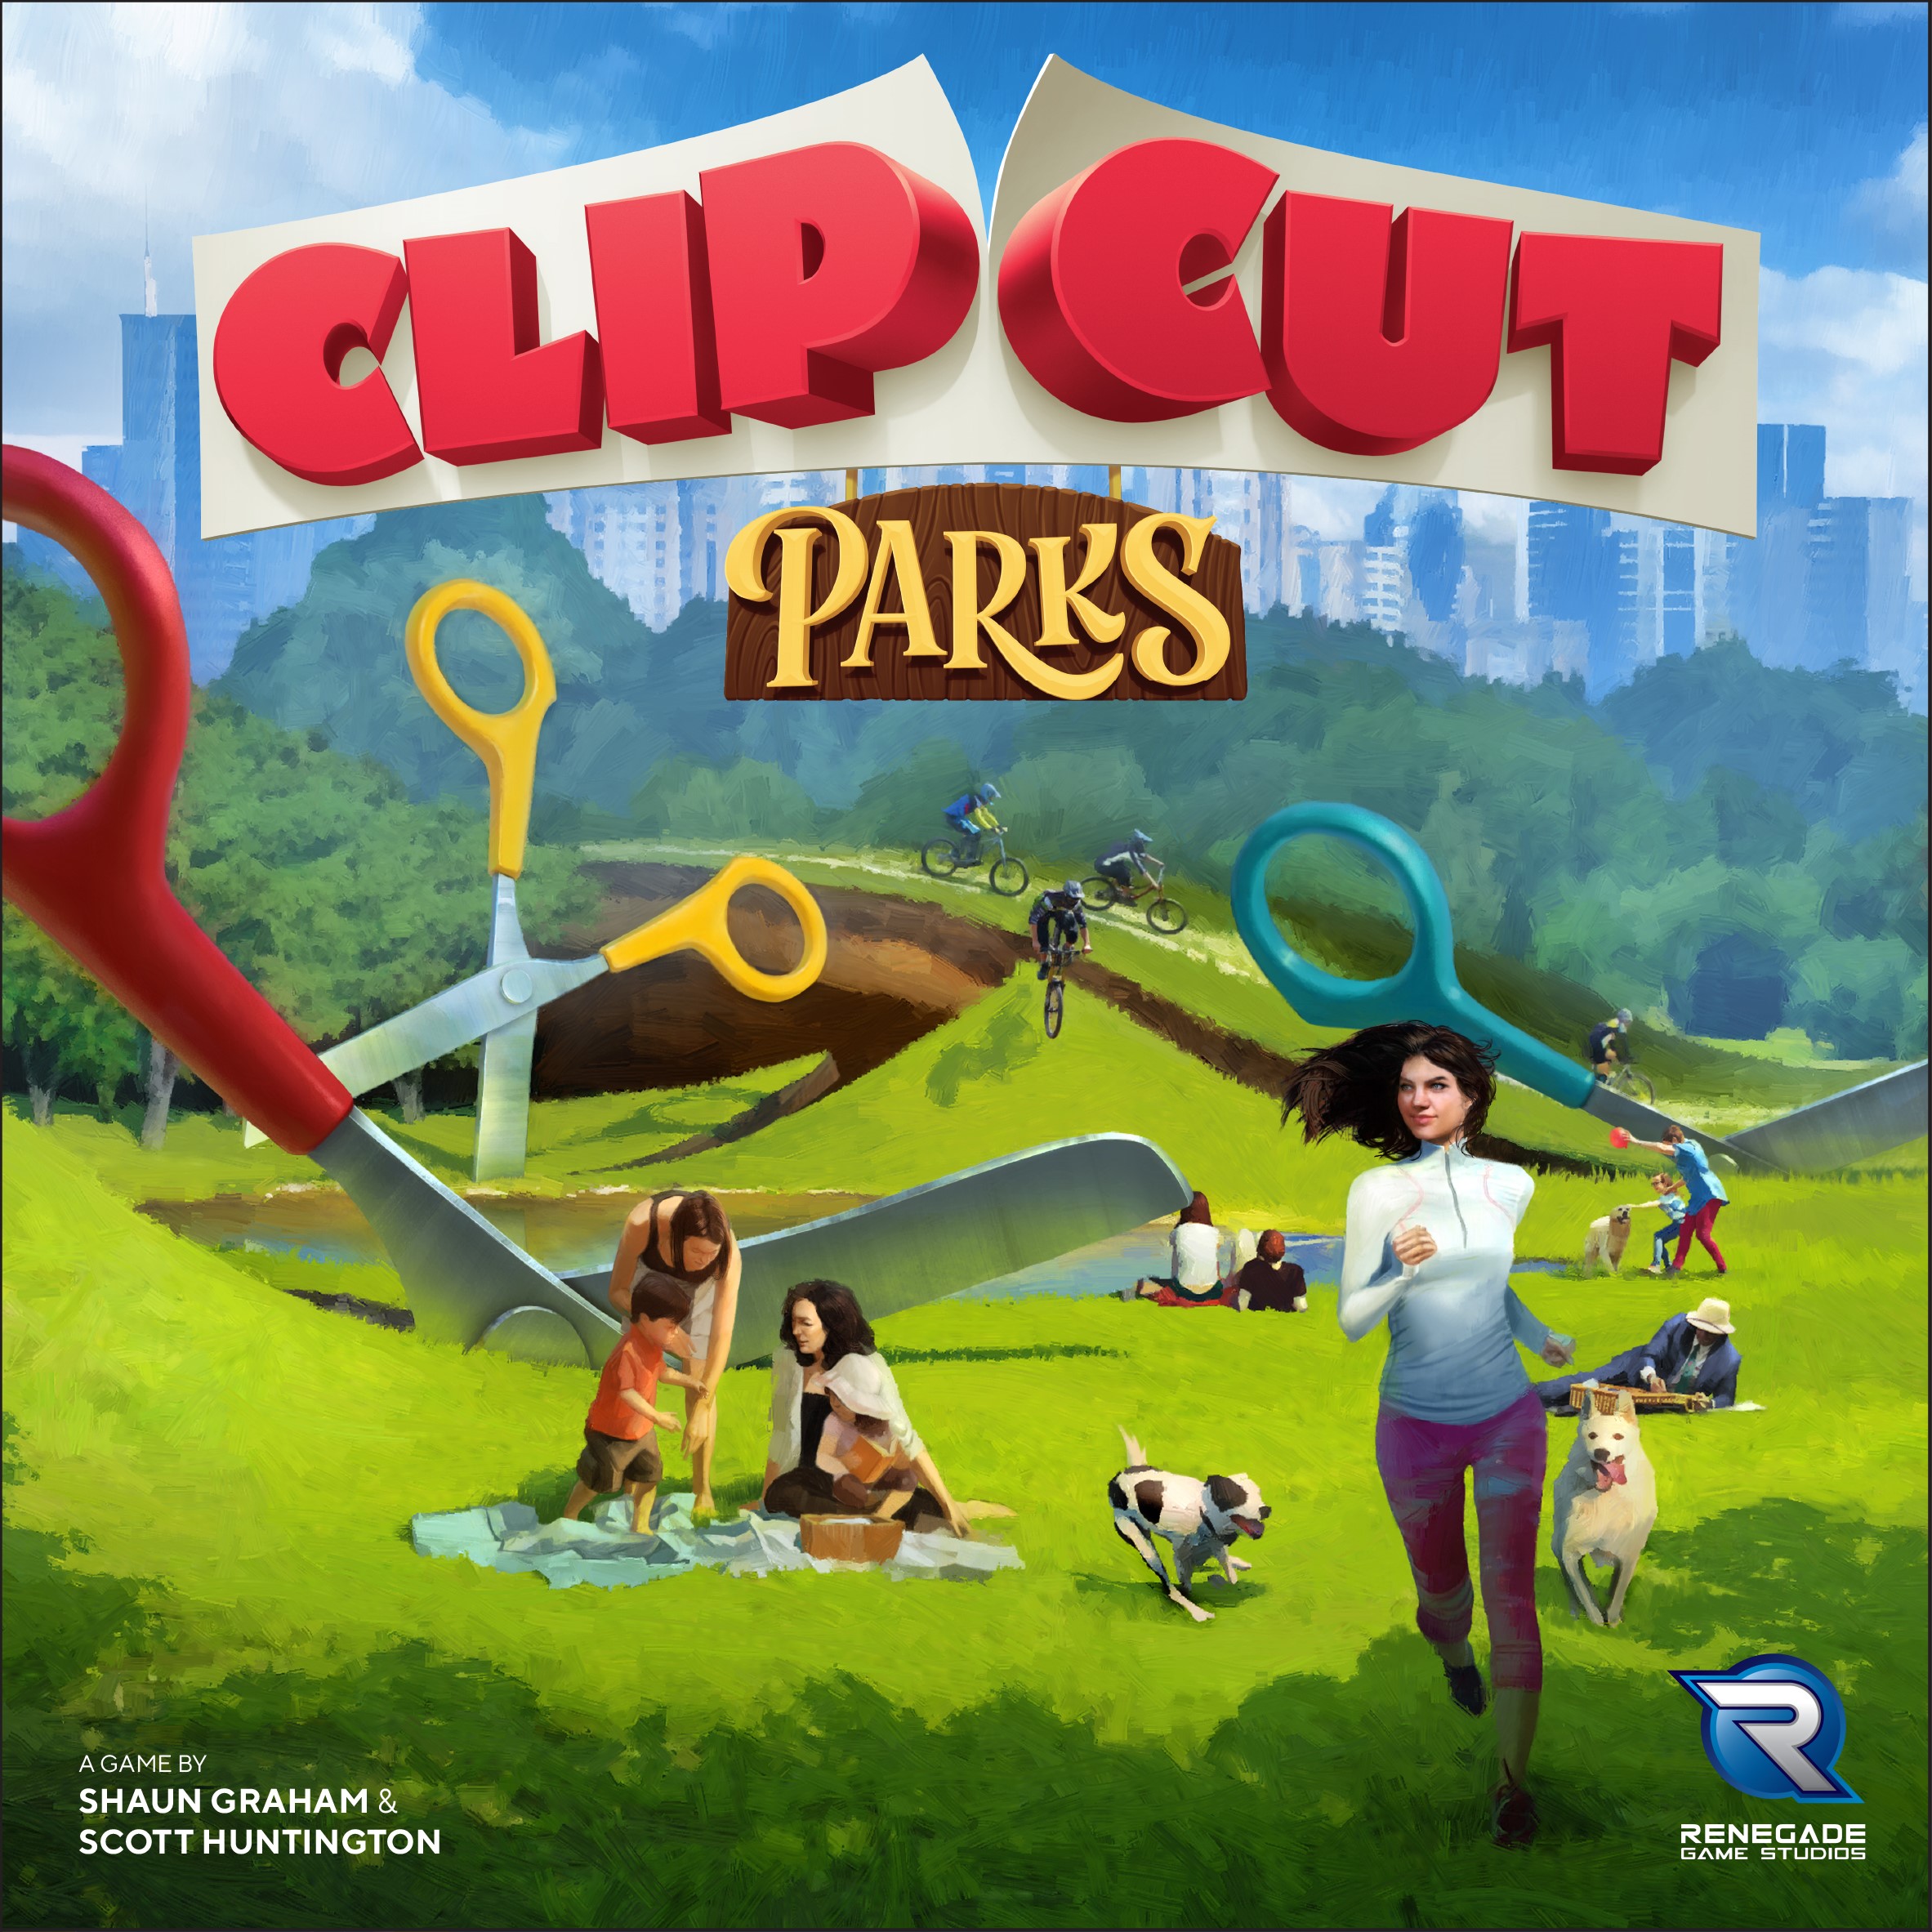 Clipcut: Parks